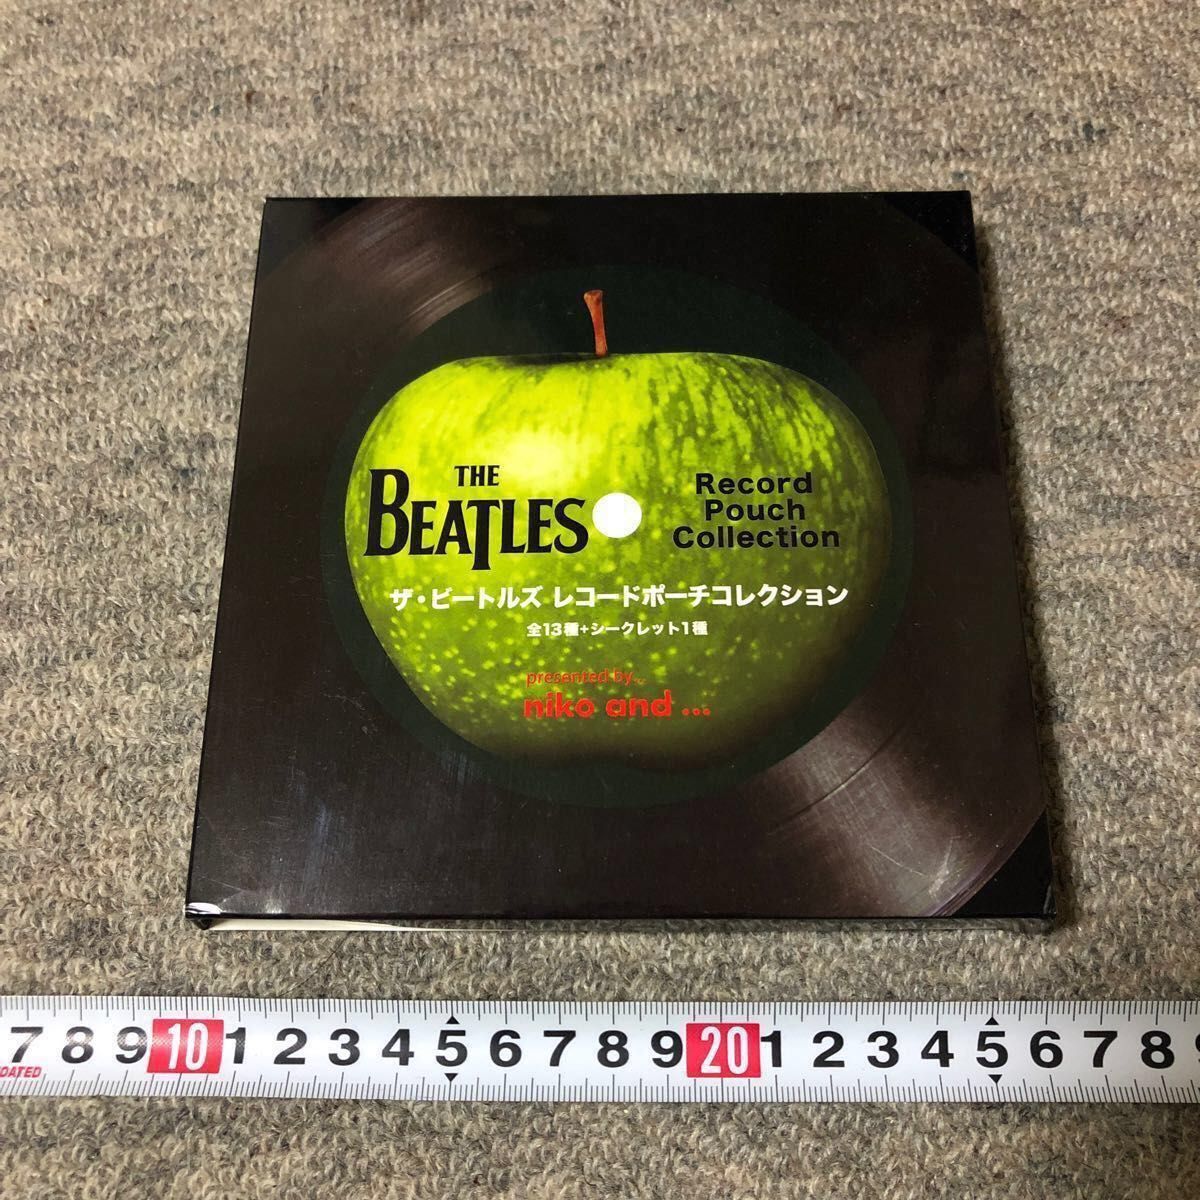 THE BEATLES / レコードポーチコレクション / niko and / ザ・ビートルズ / ニコアンド / 空箱